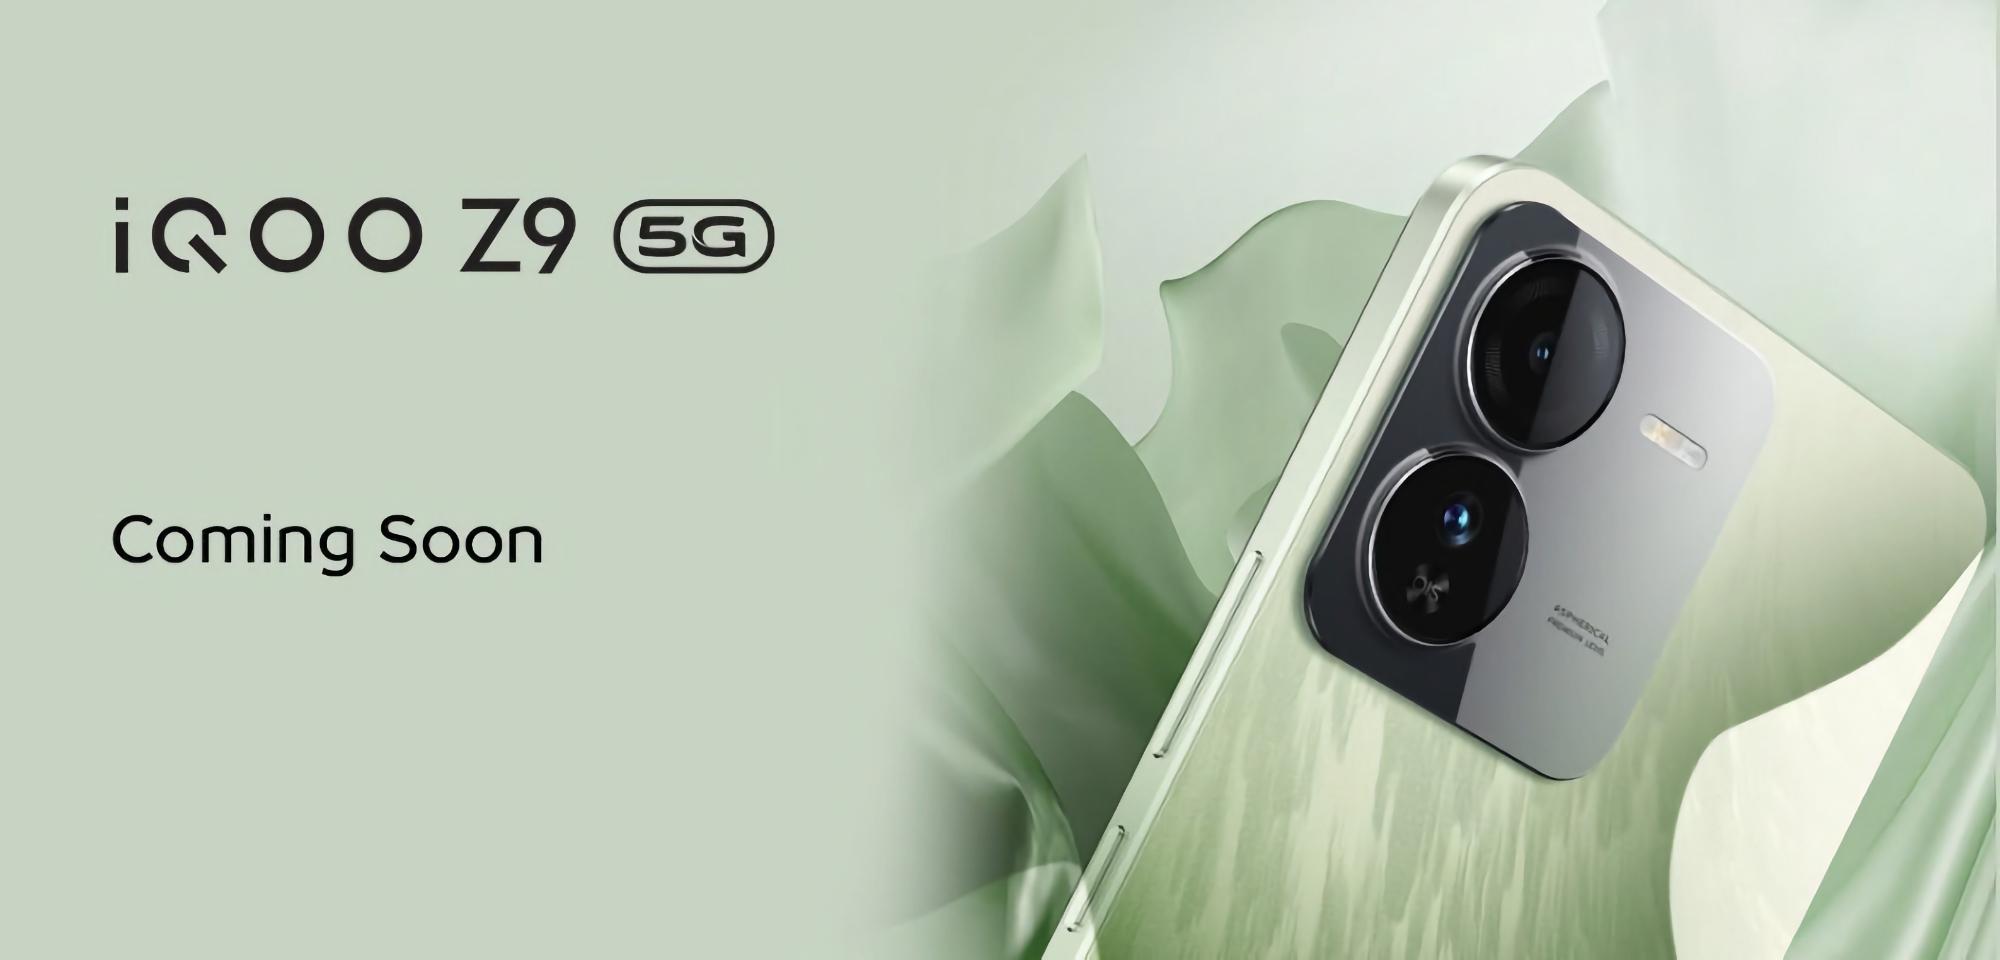 Układ MediaTek Dimensity 7200 i kamera Sony IMX882: vivo rozpoczęło prezentację smartfona iQOO Z9 5G